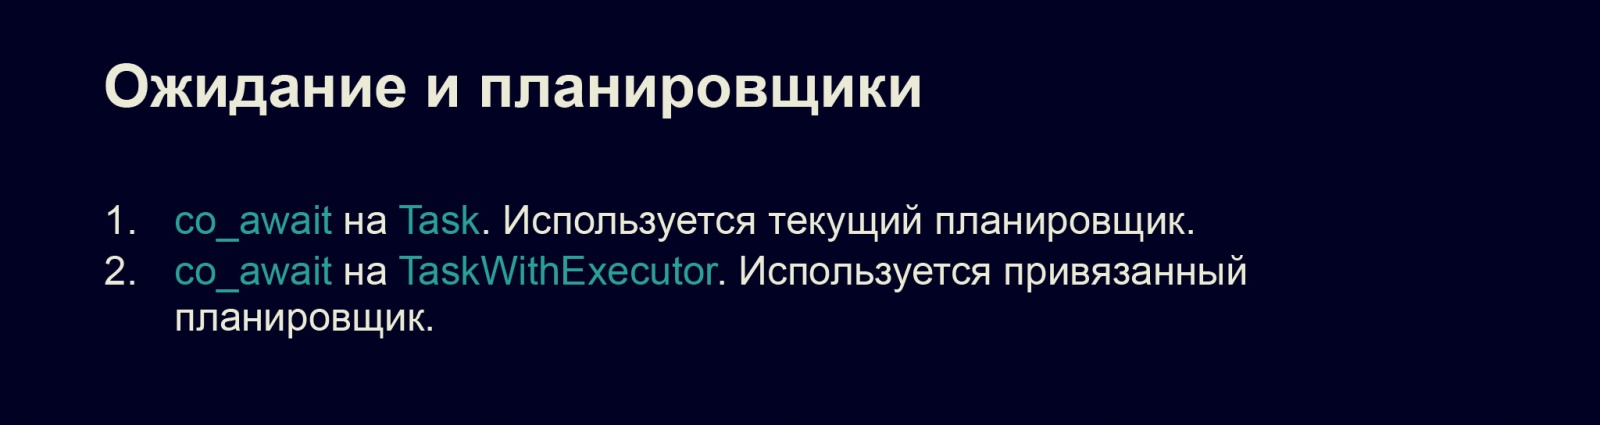 Асинхронность в С++20. Доклад в Яндексе - 20